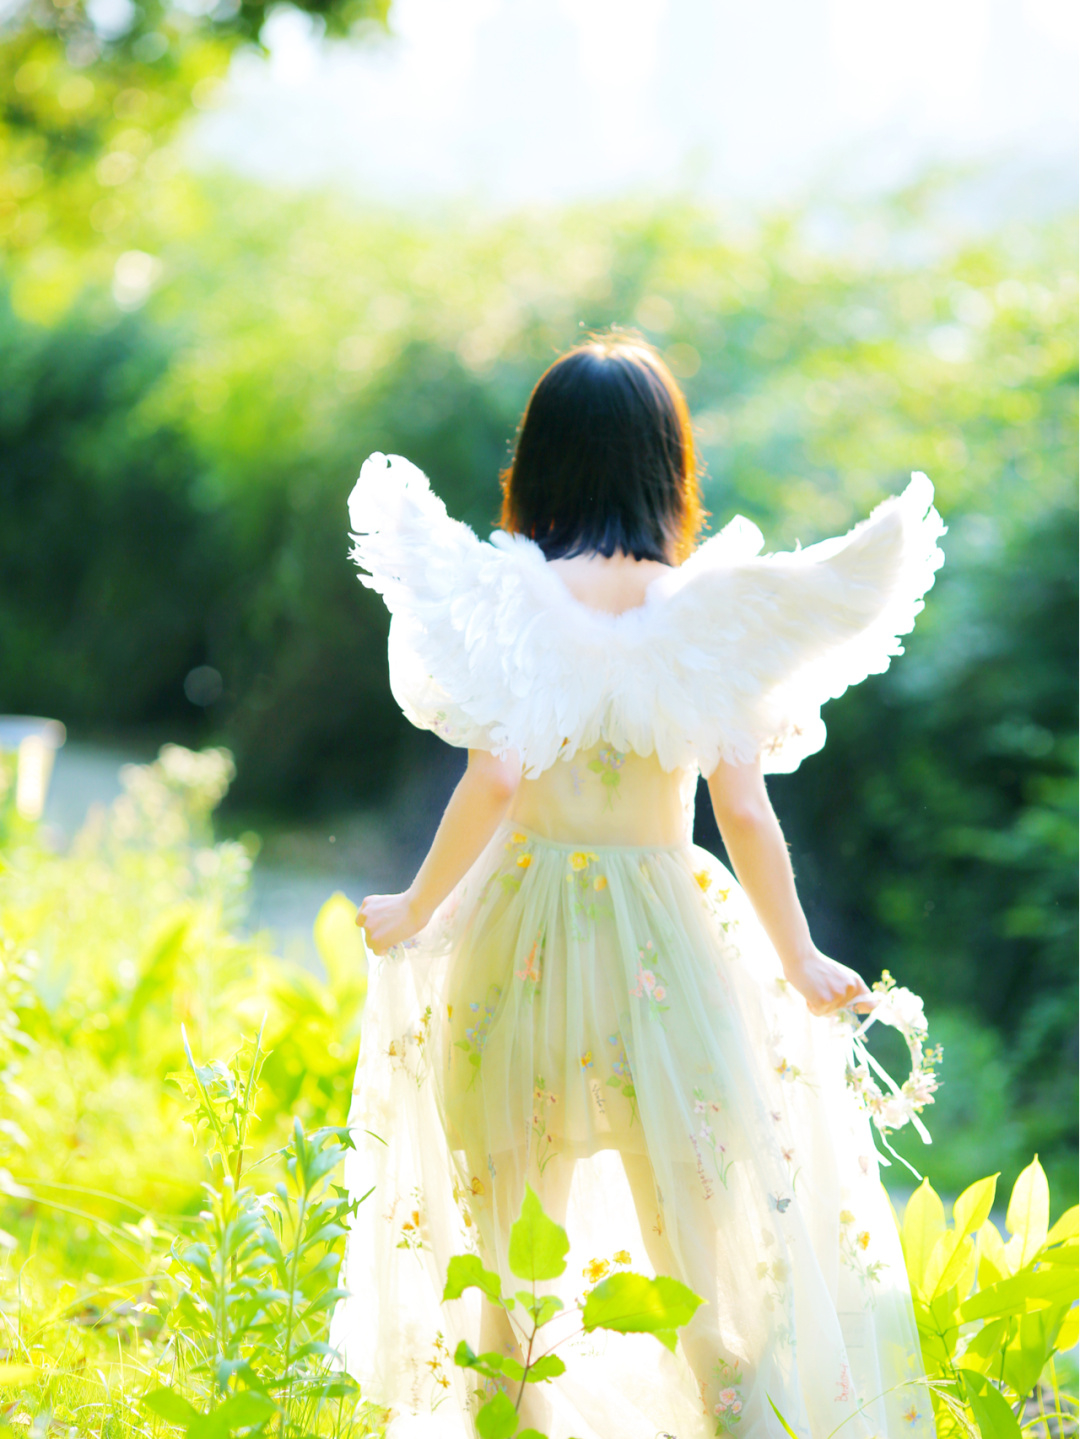 丛林里的小天使,这个翅膀估计飞不起来吧?